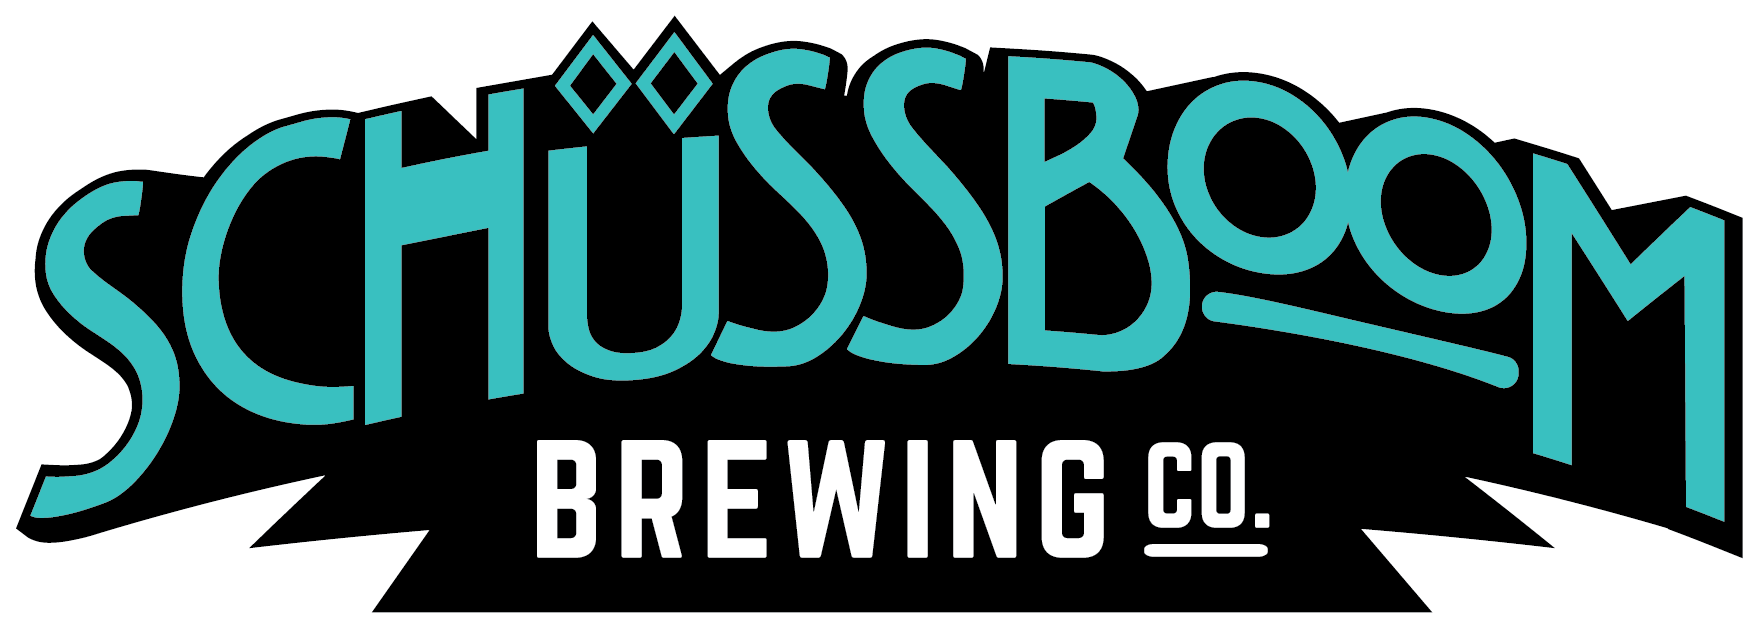 Schussboom Brewing Logo - Wordmark - Black and Blue